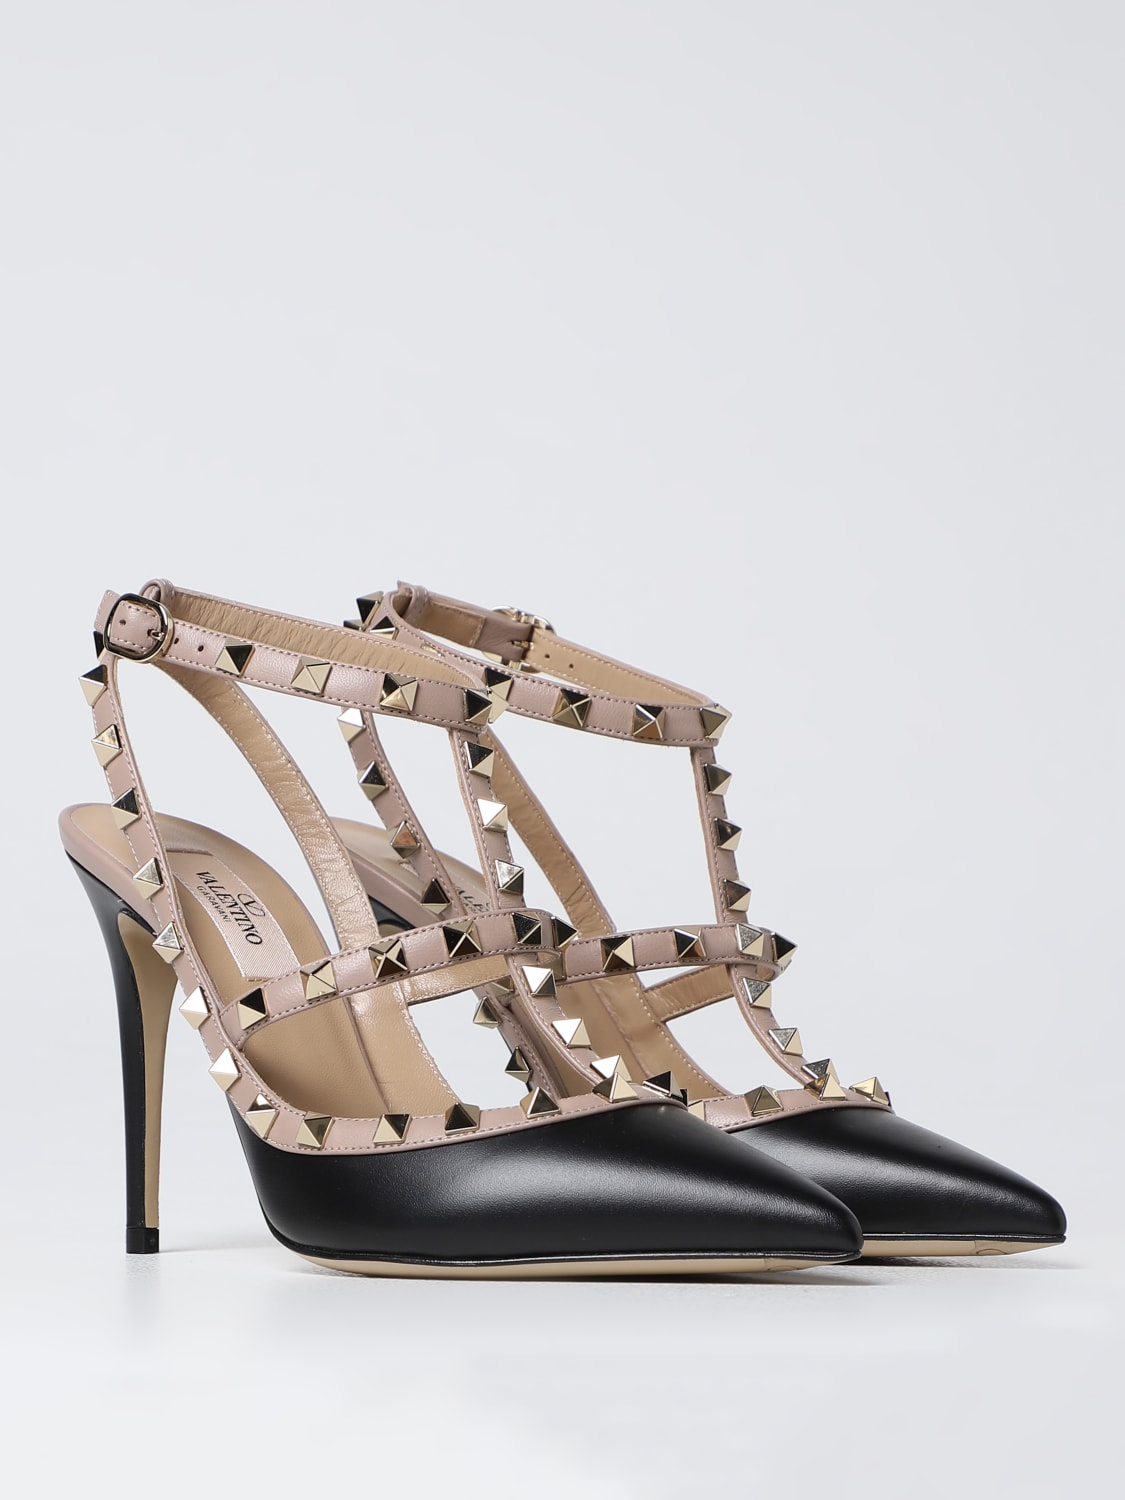 VALENTINO GARAVANI: pumps leather - Black | Valentino Garavani high heel shoes 3W2S0393VOD online at